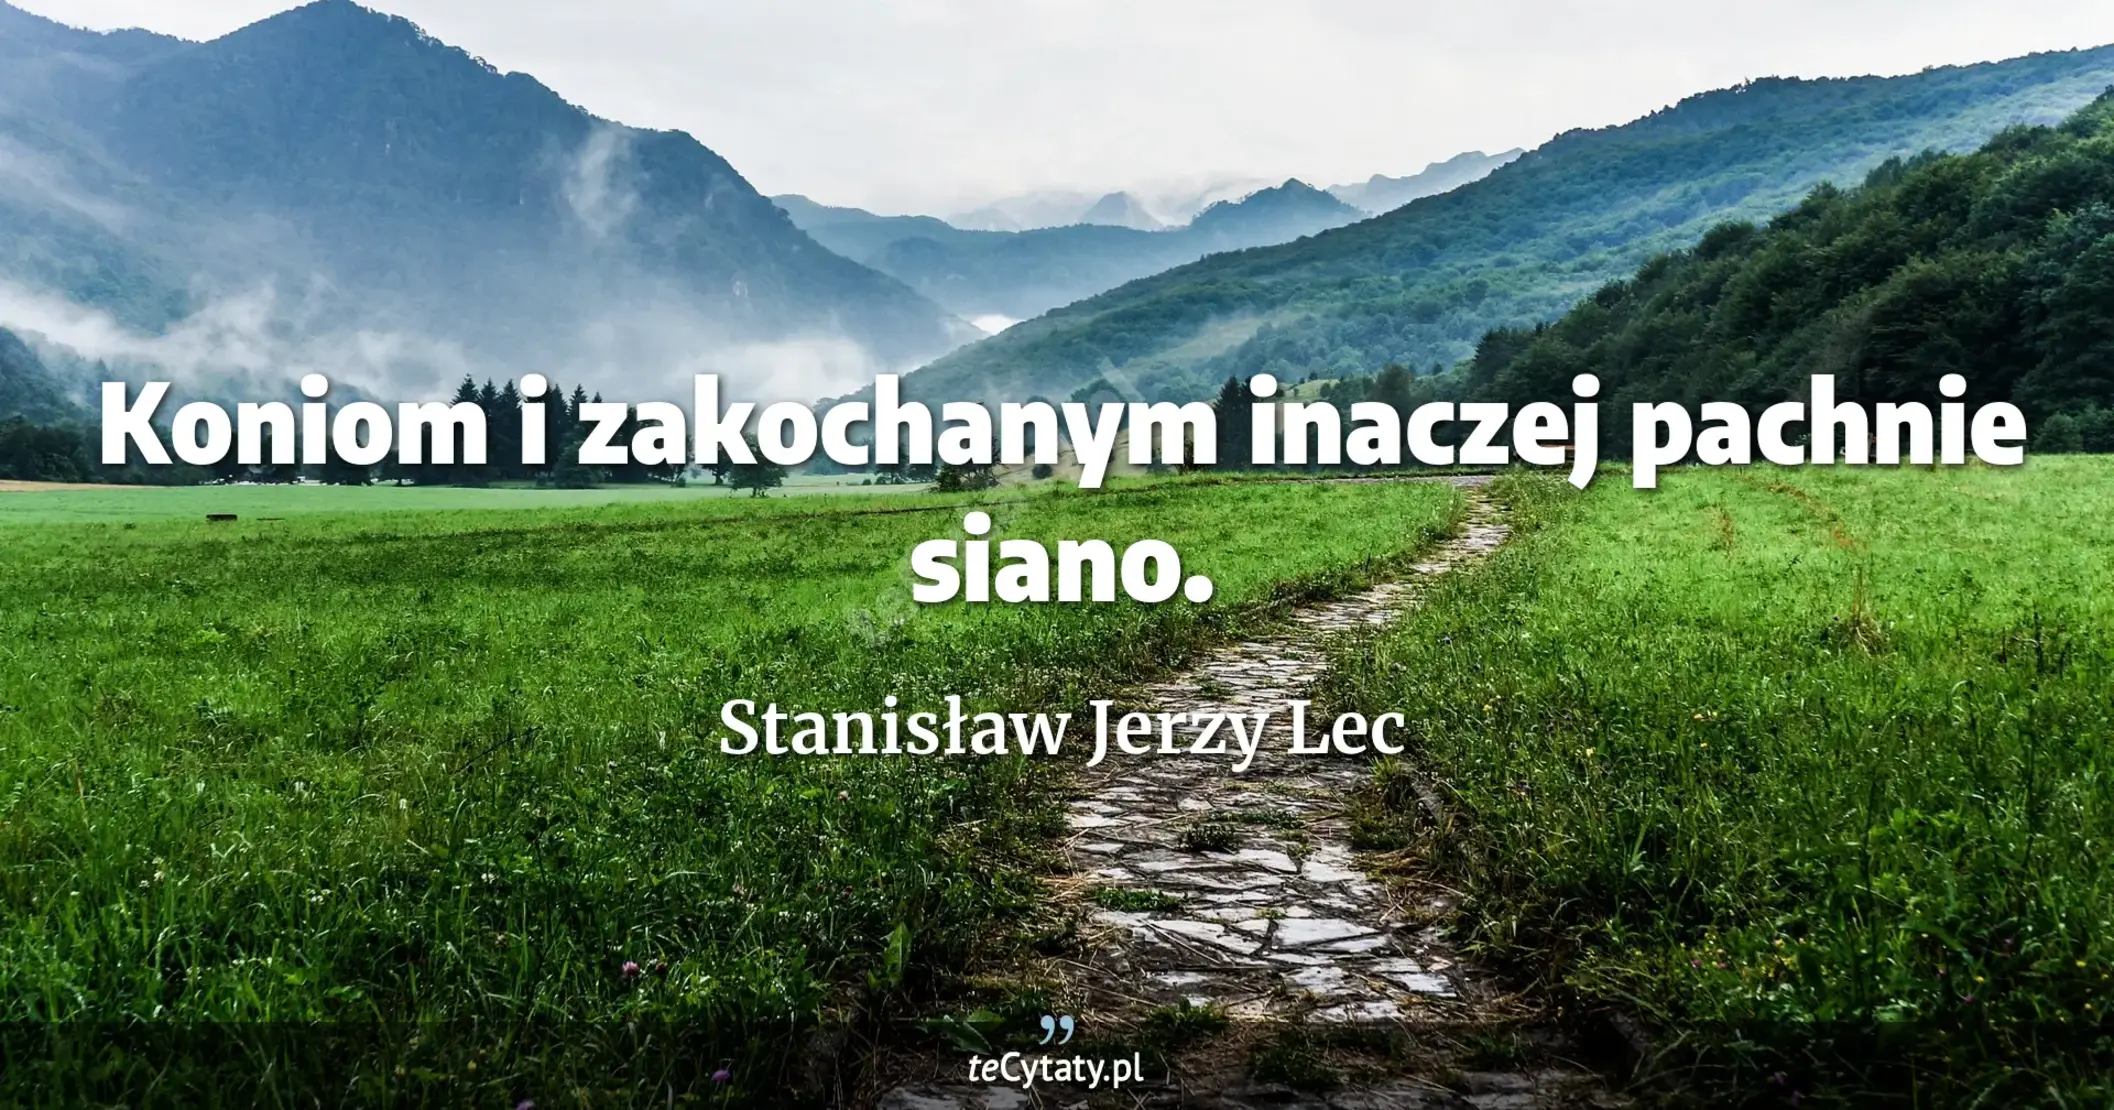 Koniom i zakochanym inaczej pachnie siano. - Stanisław Jerzy Lec